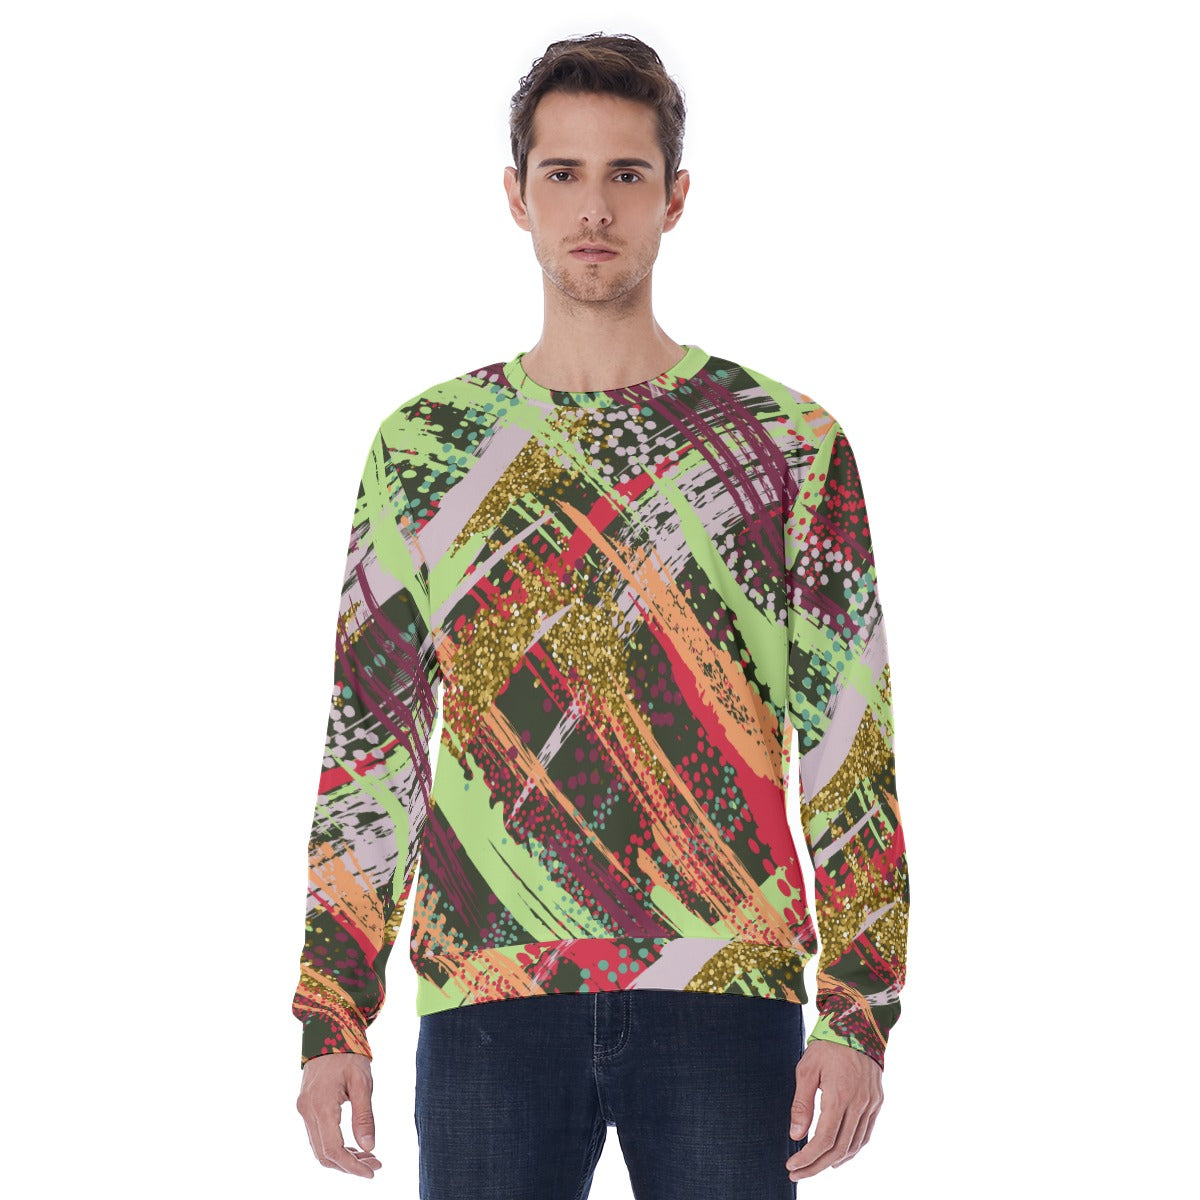 All-Over Print Men's Sweatshirt